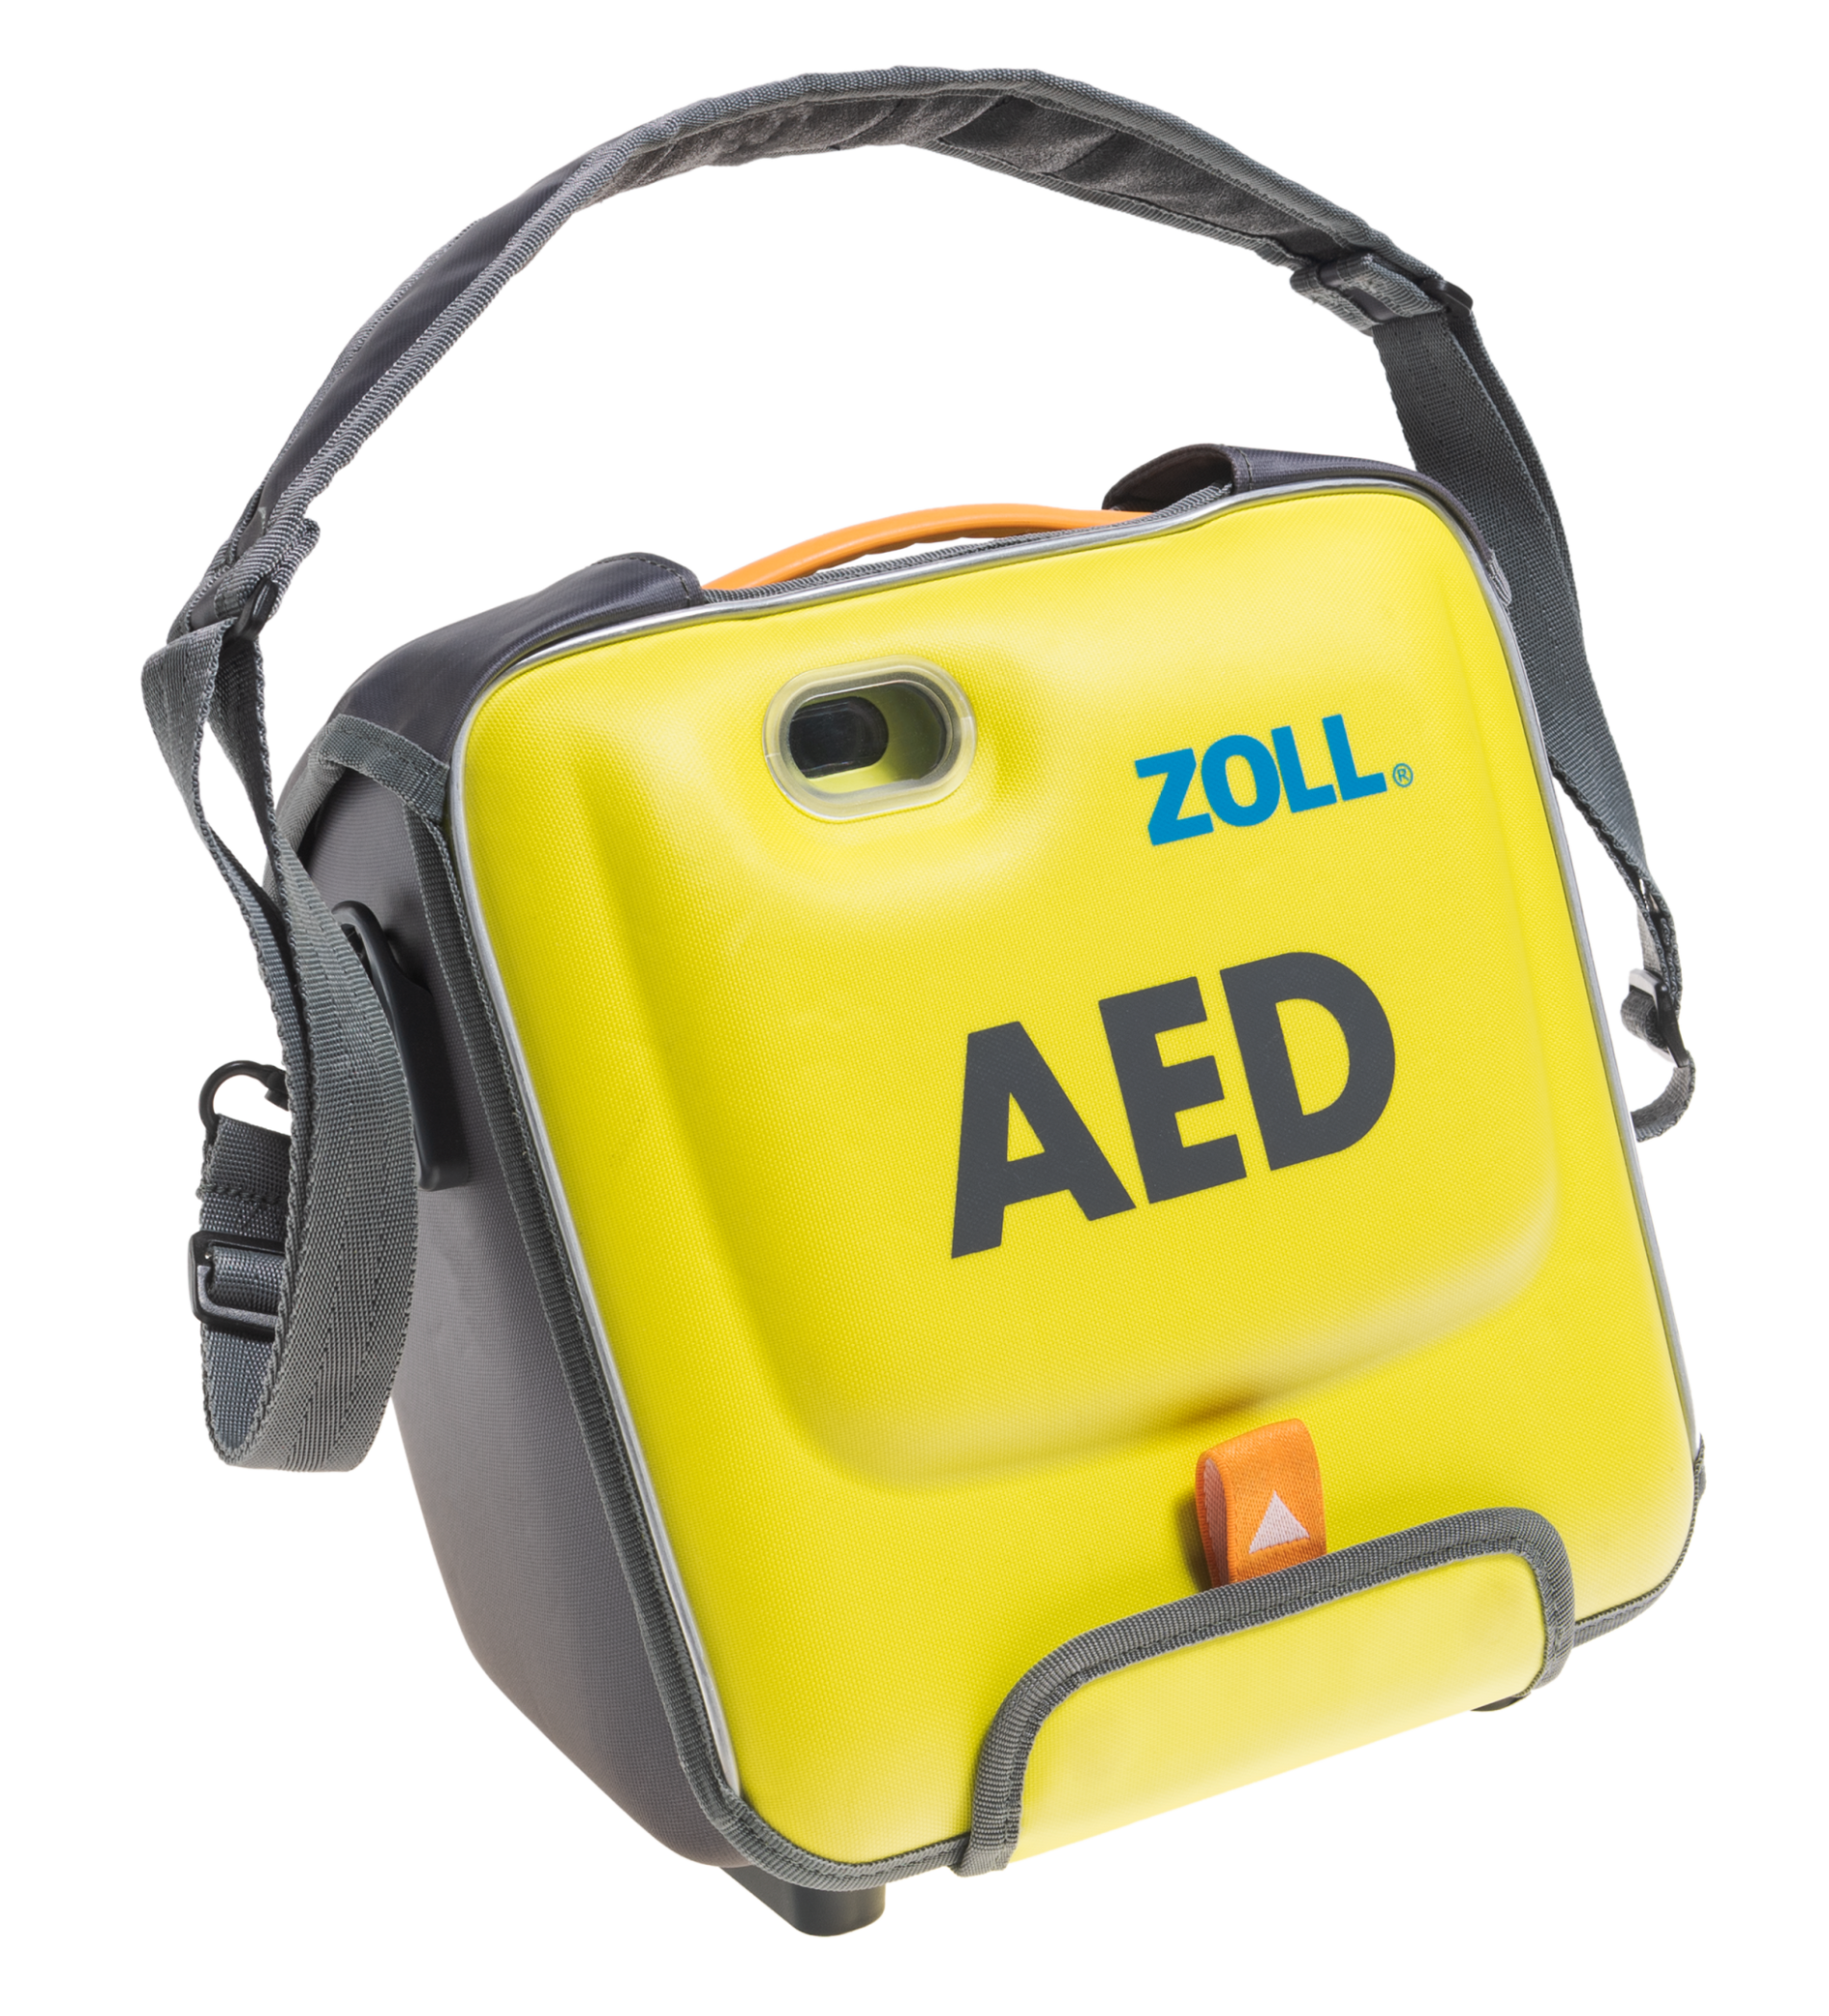 Défibrillateur ZOLL AED 3 automatique | Cardiosecours